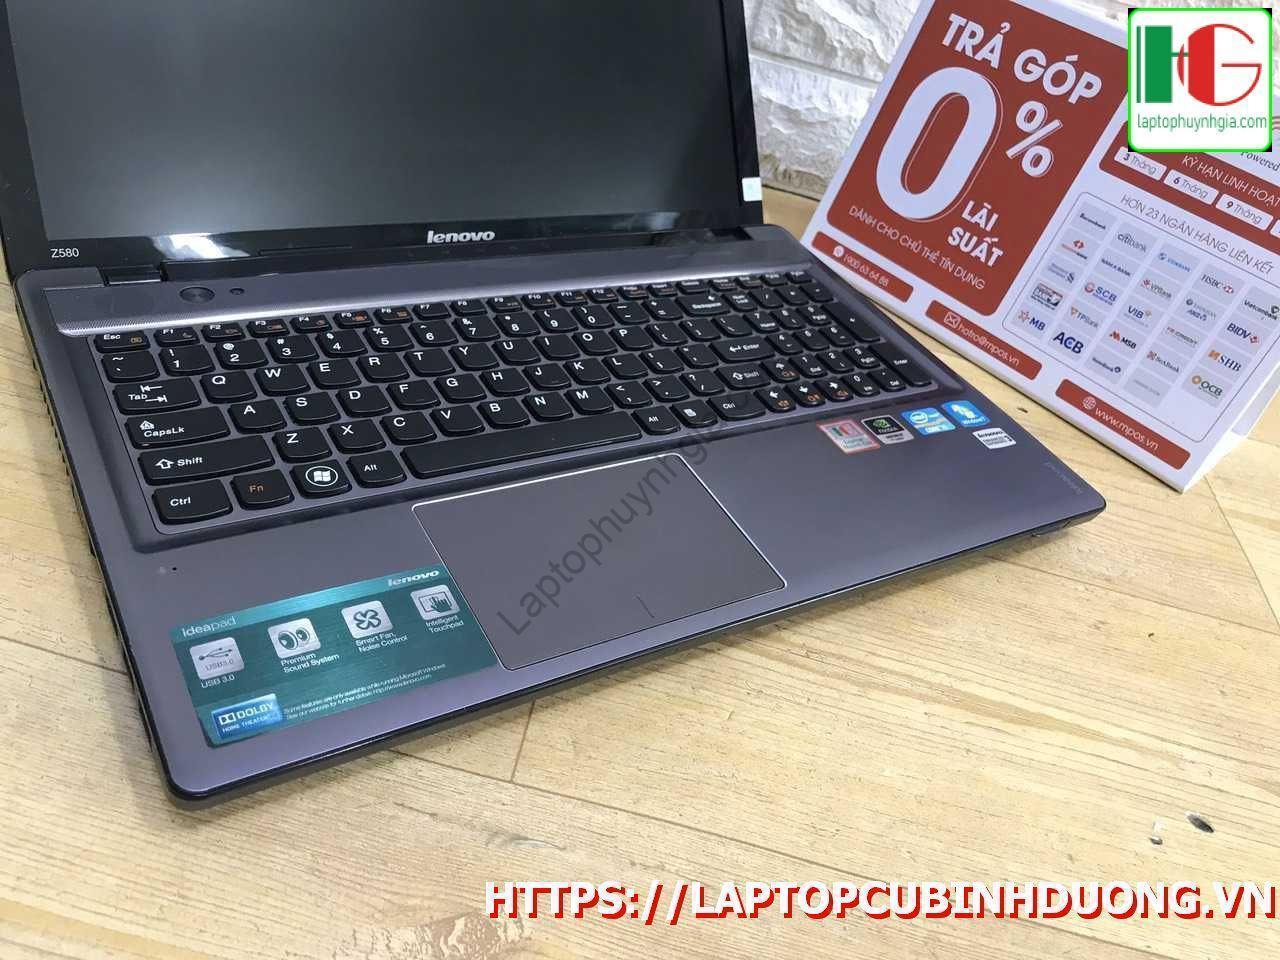 Laptop Lenovo Z580 I5 3210m 4g Ssd 128g Nvidia Gt630 Lcd 15 Laptopcubinhduong.vn 1 [kích Thước Gốc] Result